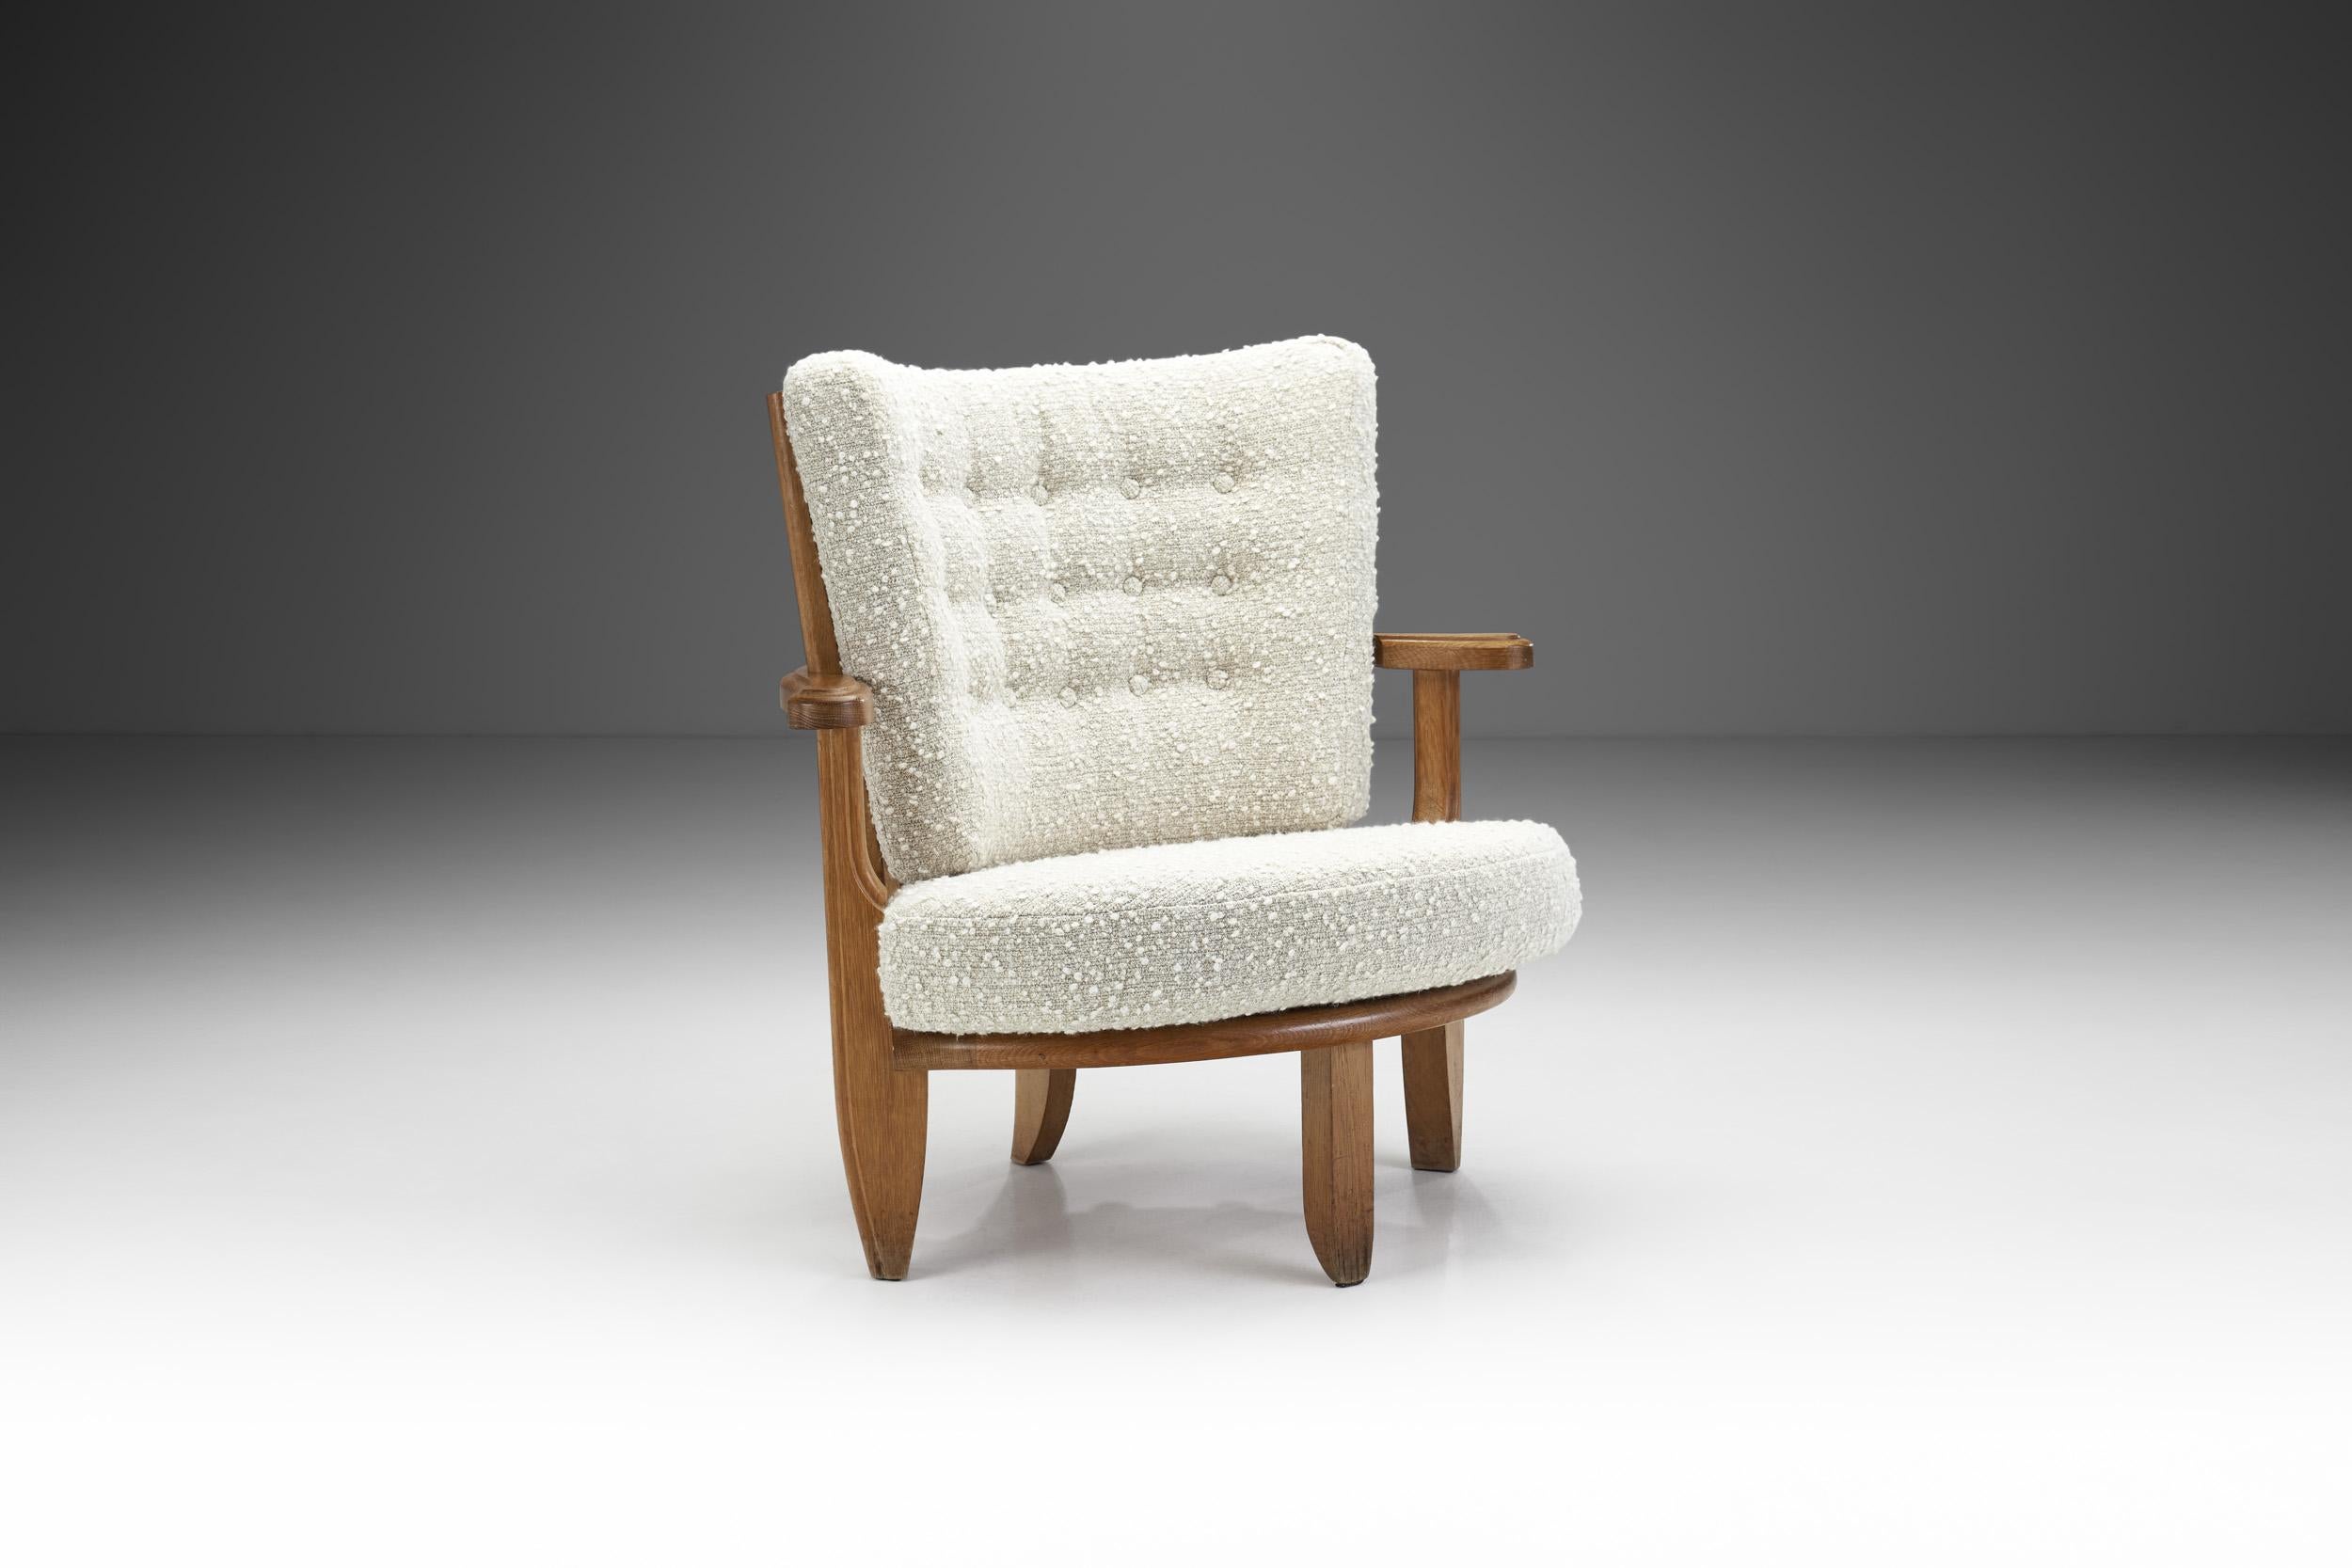 Mid-20th Century Guillerme et Chambron Sculptural Oak Chair for Votre Maison, France, 1950s